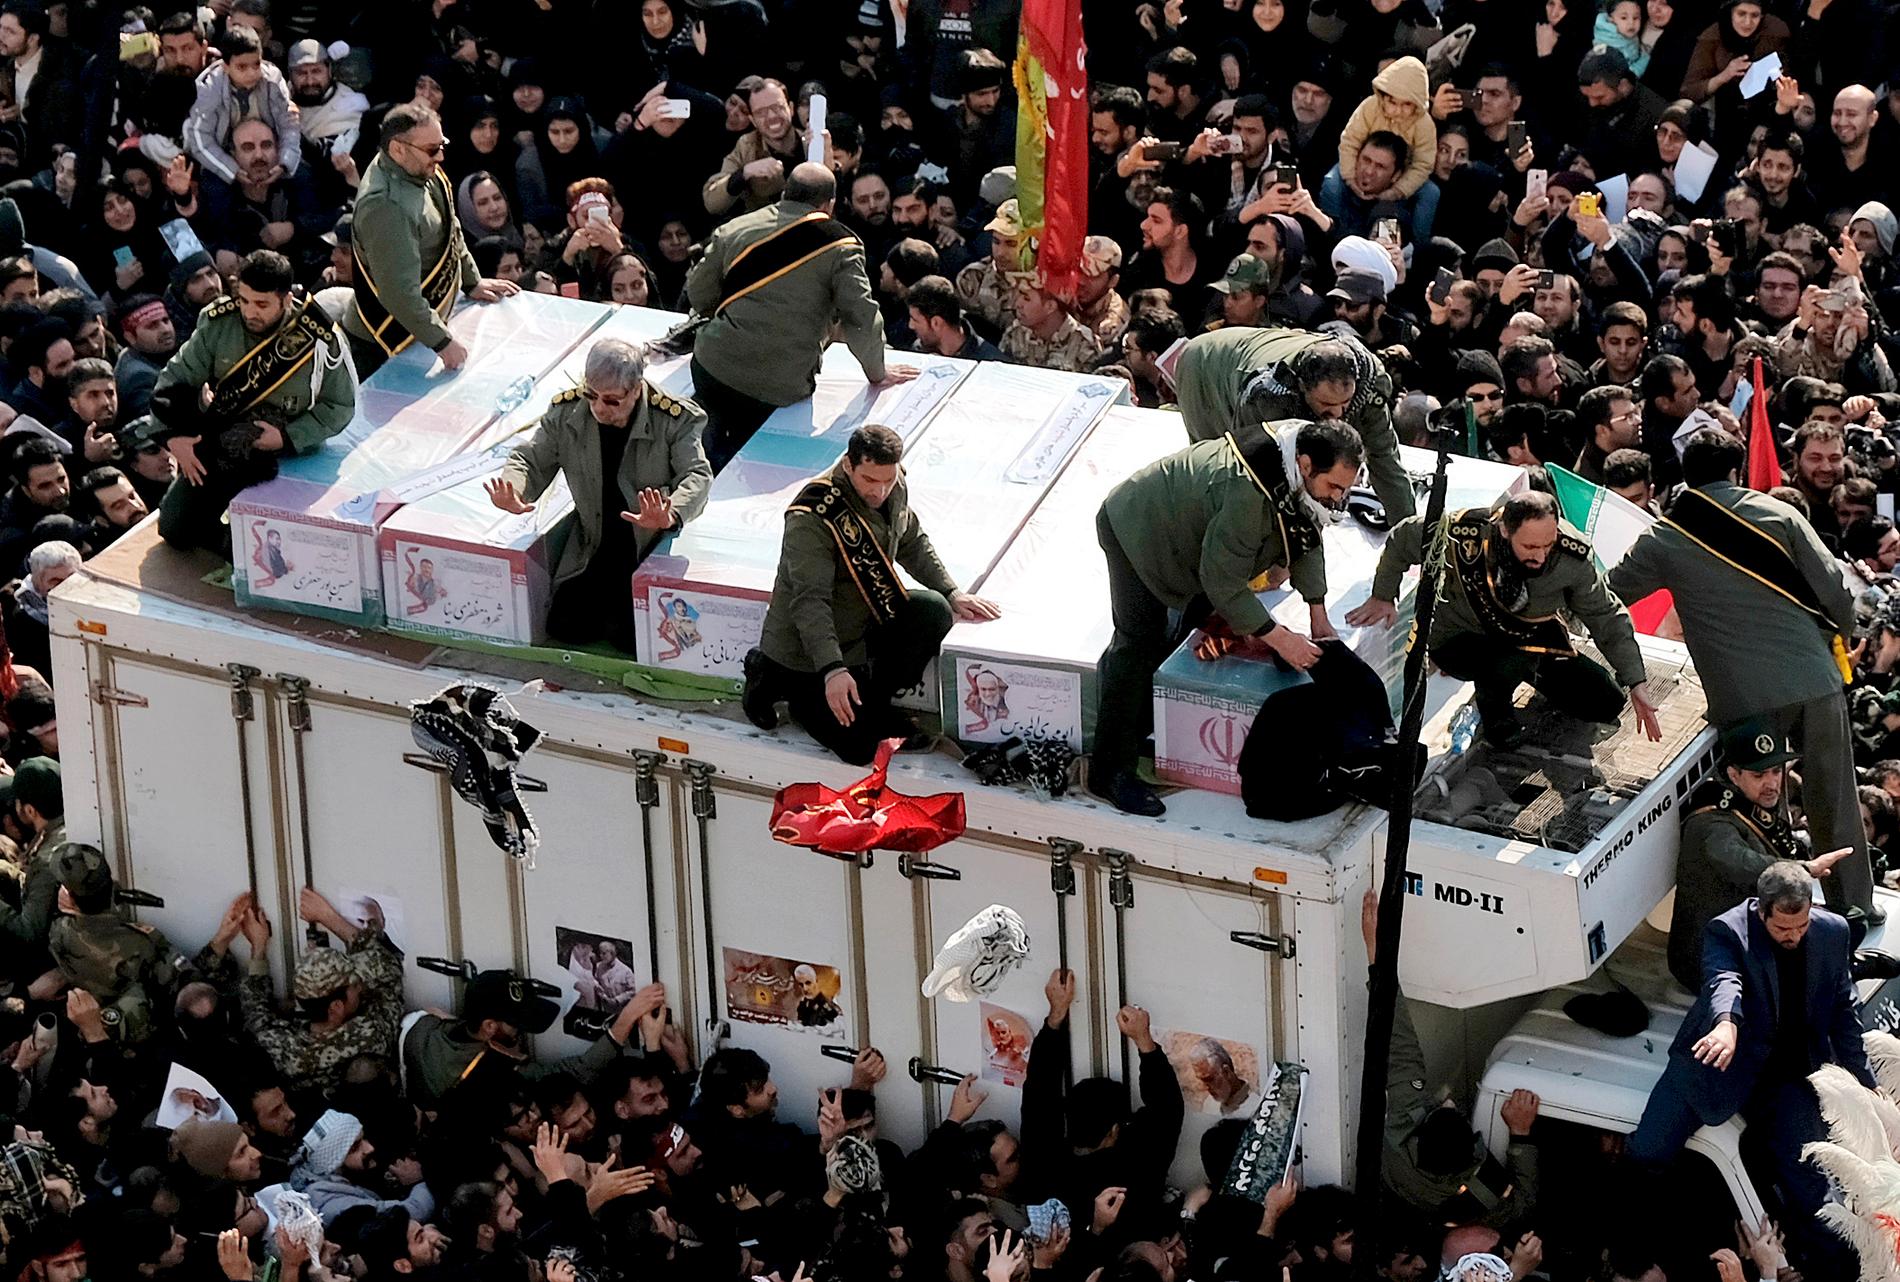 Kistorna med Qassem Soleimani och de andra som dödades i attacken förs fram på en lastbil under ceremonin i Teheran, måndagen 6 januari.